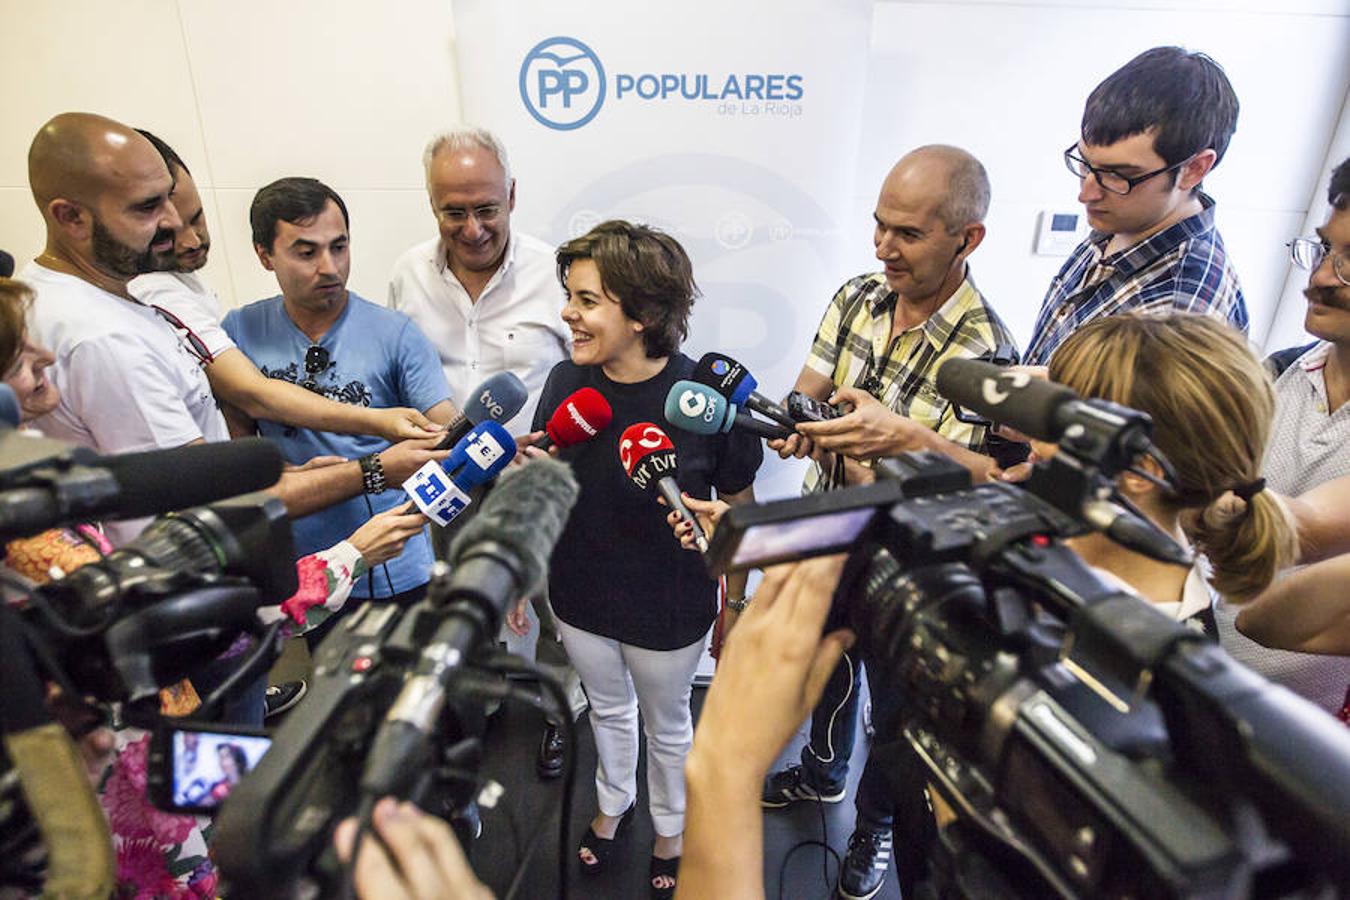 La andidata a la Presidencia del PP Soraya Sáenz de Santamaría ha asegurado hoy en Logroño que es, respecto al resto de aspirantes a presidir el partido, la «más idónea para gobernar en este momento» y la que «podría ayudar a recuperar el voto para el PP» de aquellos que han dejado de hacerlo.